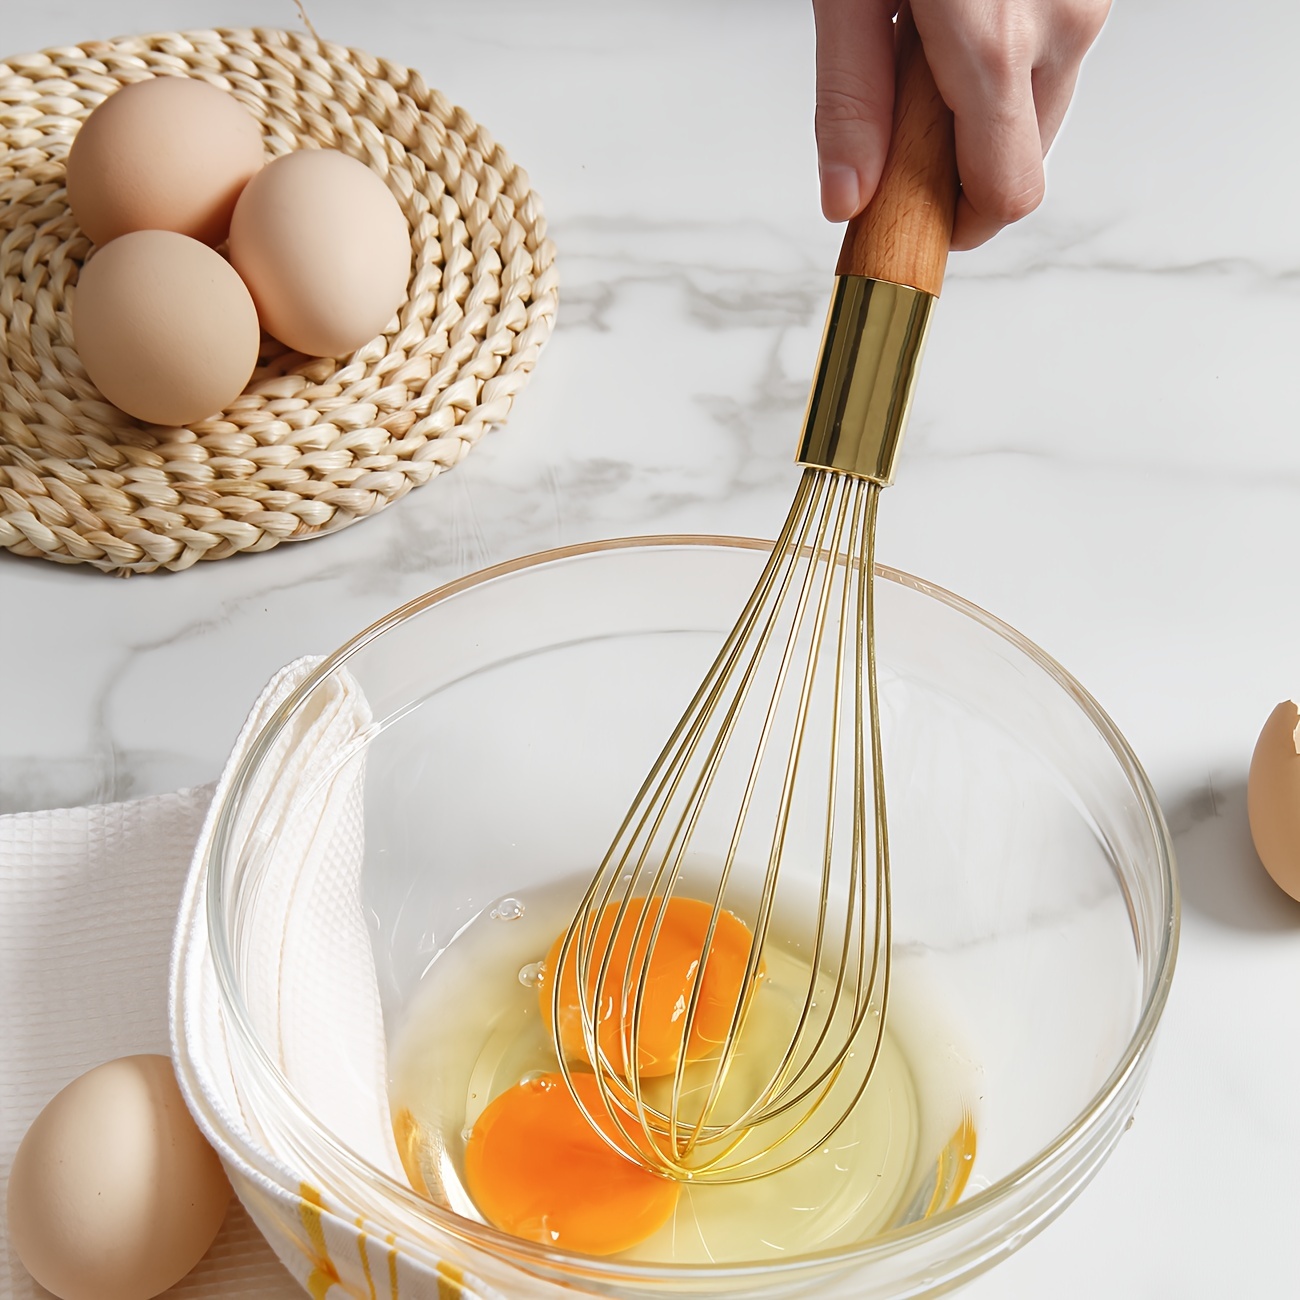 Golden Whisk Stainless Steel Egg Beater Blender Mixer - Temu